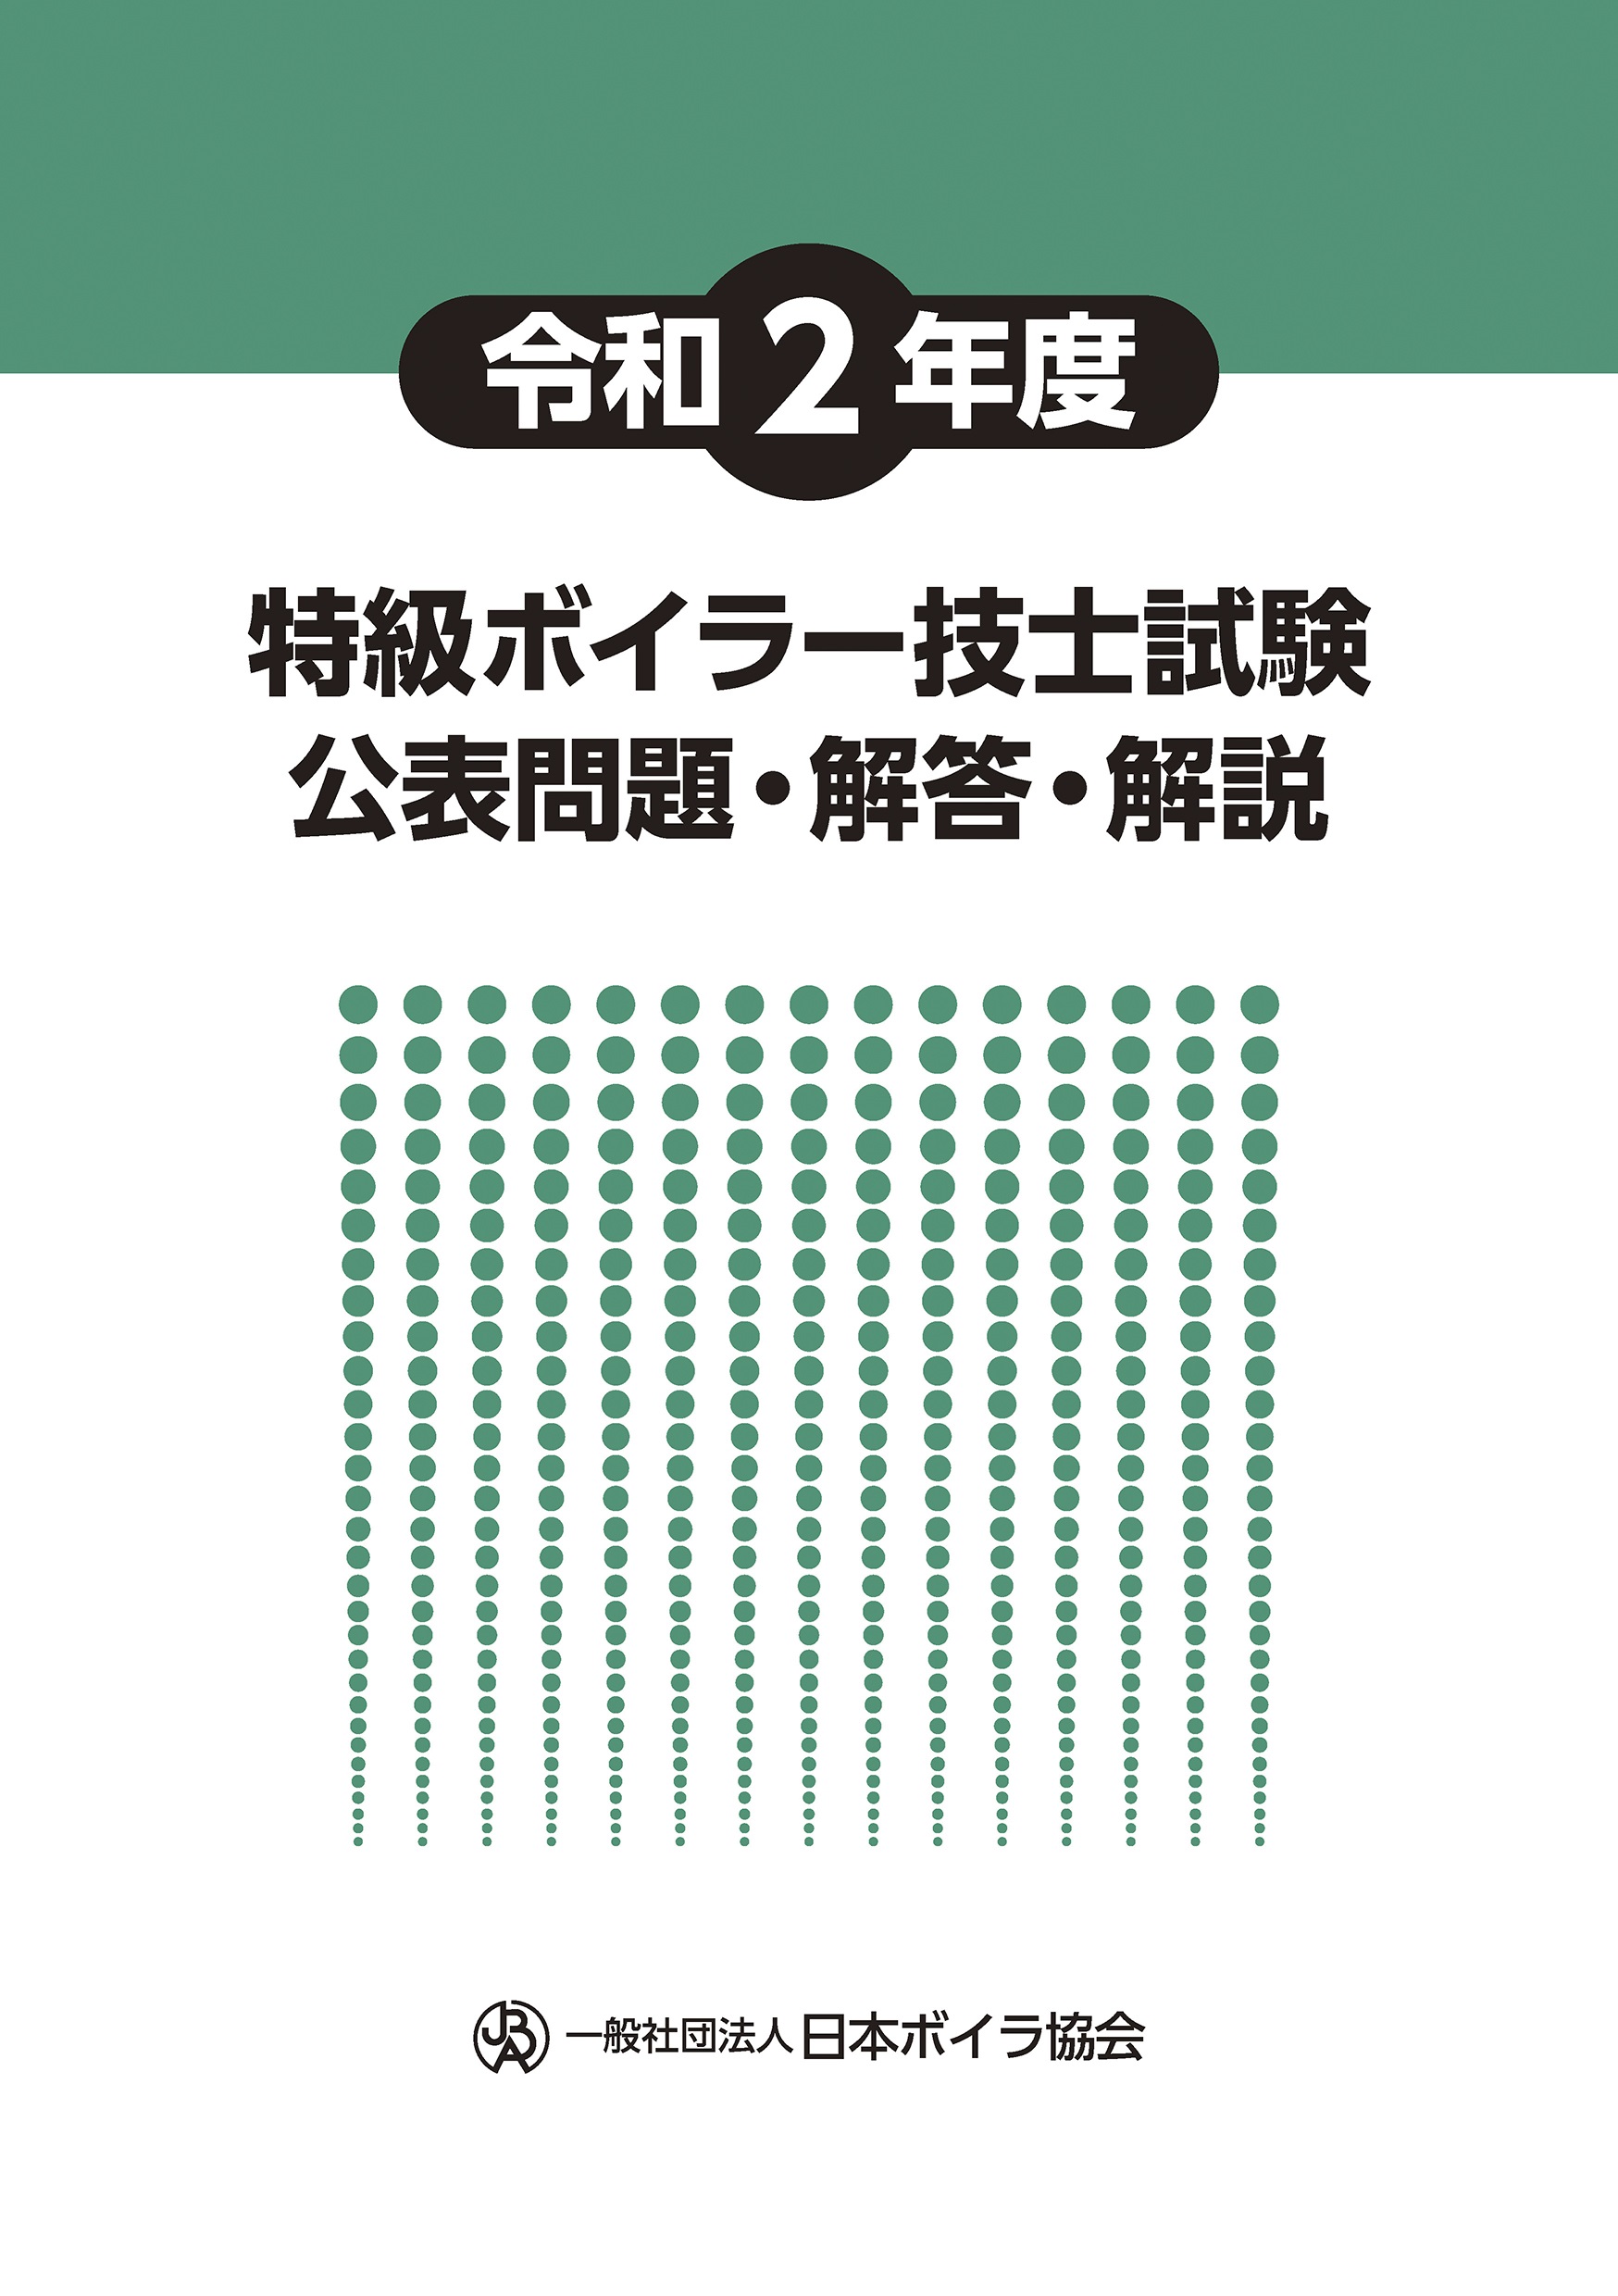 特級ボイラー技士受験用テキストの図書等一覧 - 日本ボイラ協会